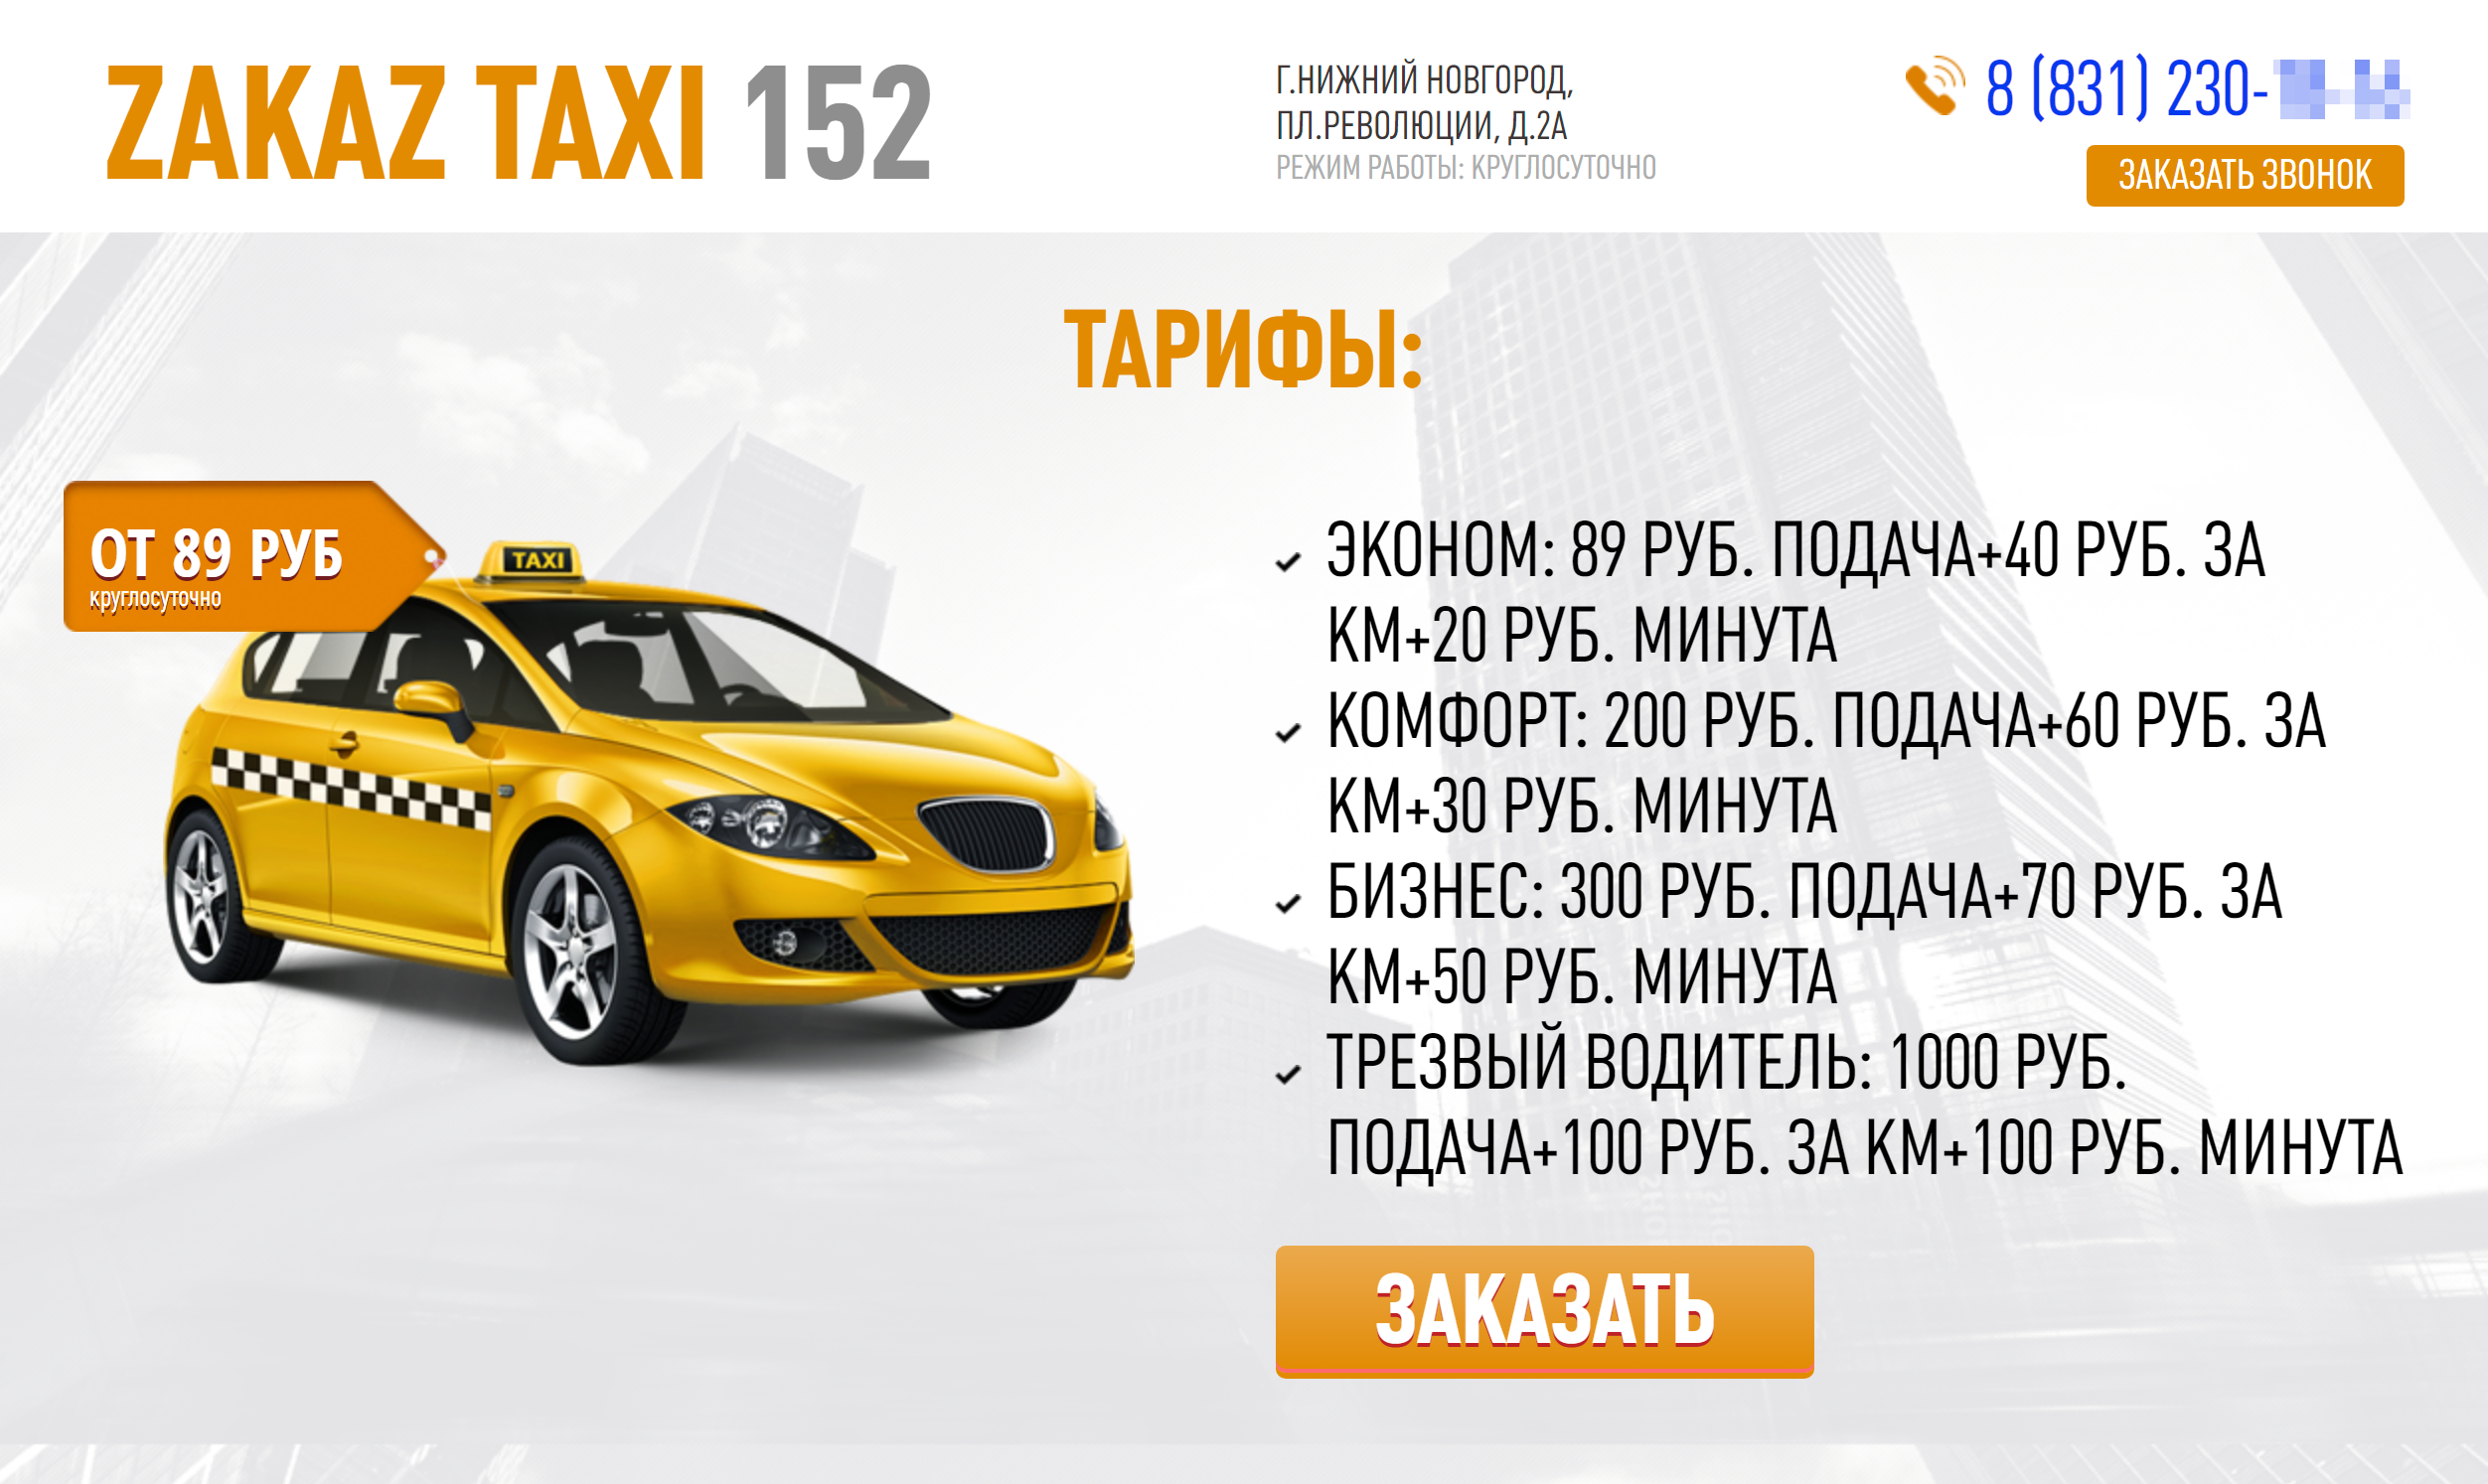 Один из клонов сайта, где коллега заказывала такси. Отличаются только цвета и название